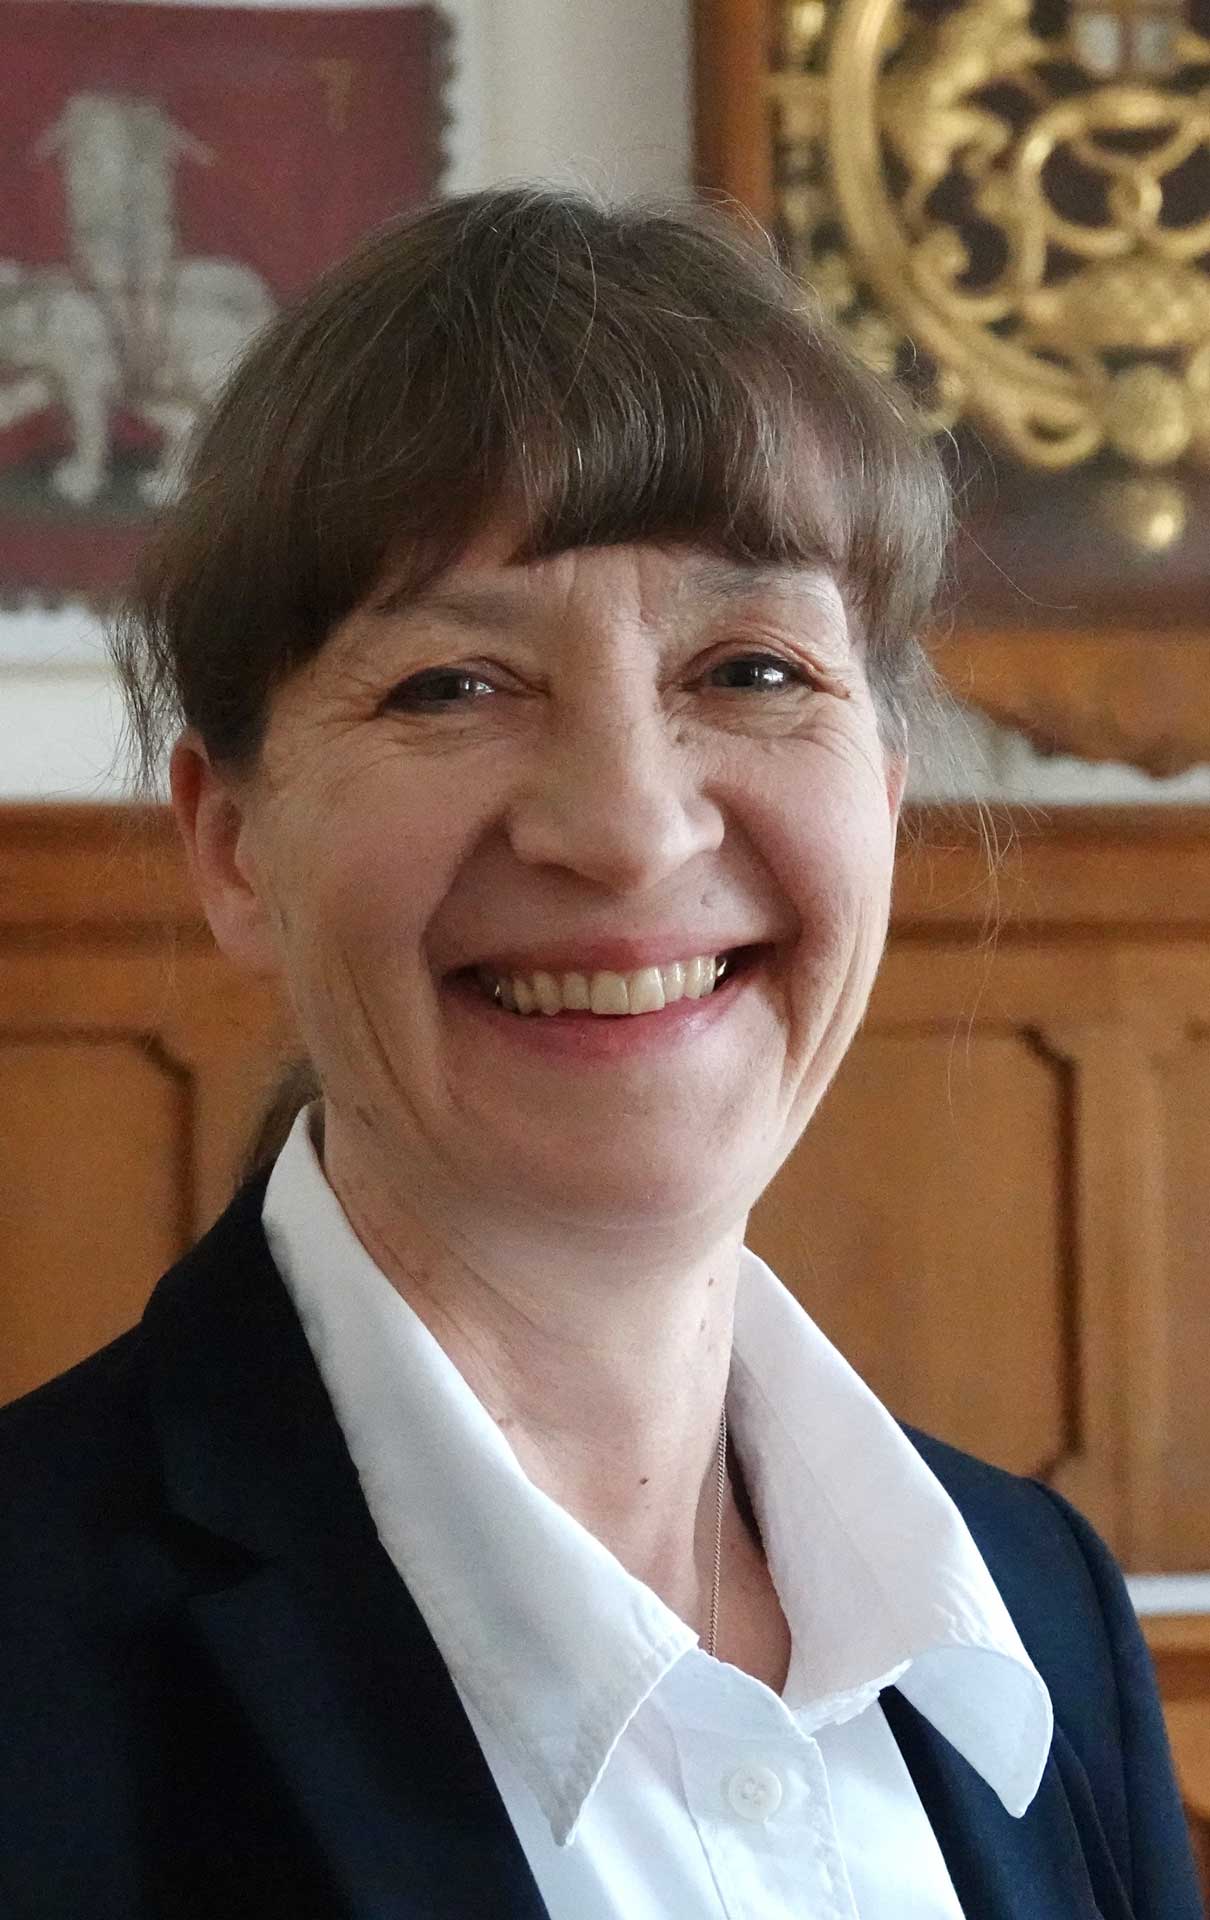 Anja Schneider